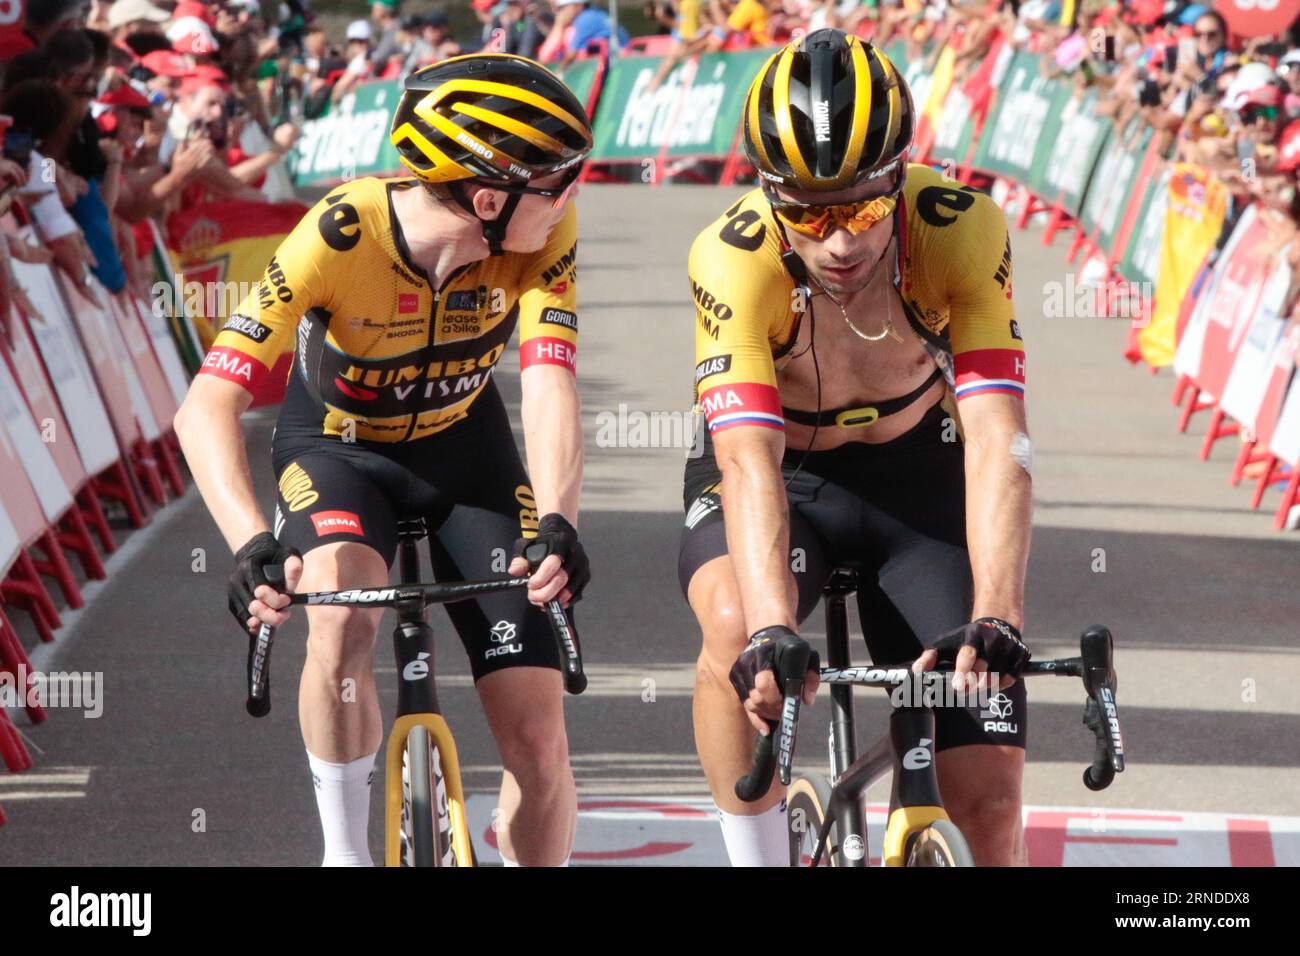 Le vainqueur du Tour de France, Vingegaard, à gauche, regarde en arrière pour voir les lacunes tandis que le vainqueur du Giro d'Italia Roglic vérifie son ordinateur lorsqu'ils franchissent la ligne après Banque D'Images